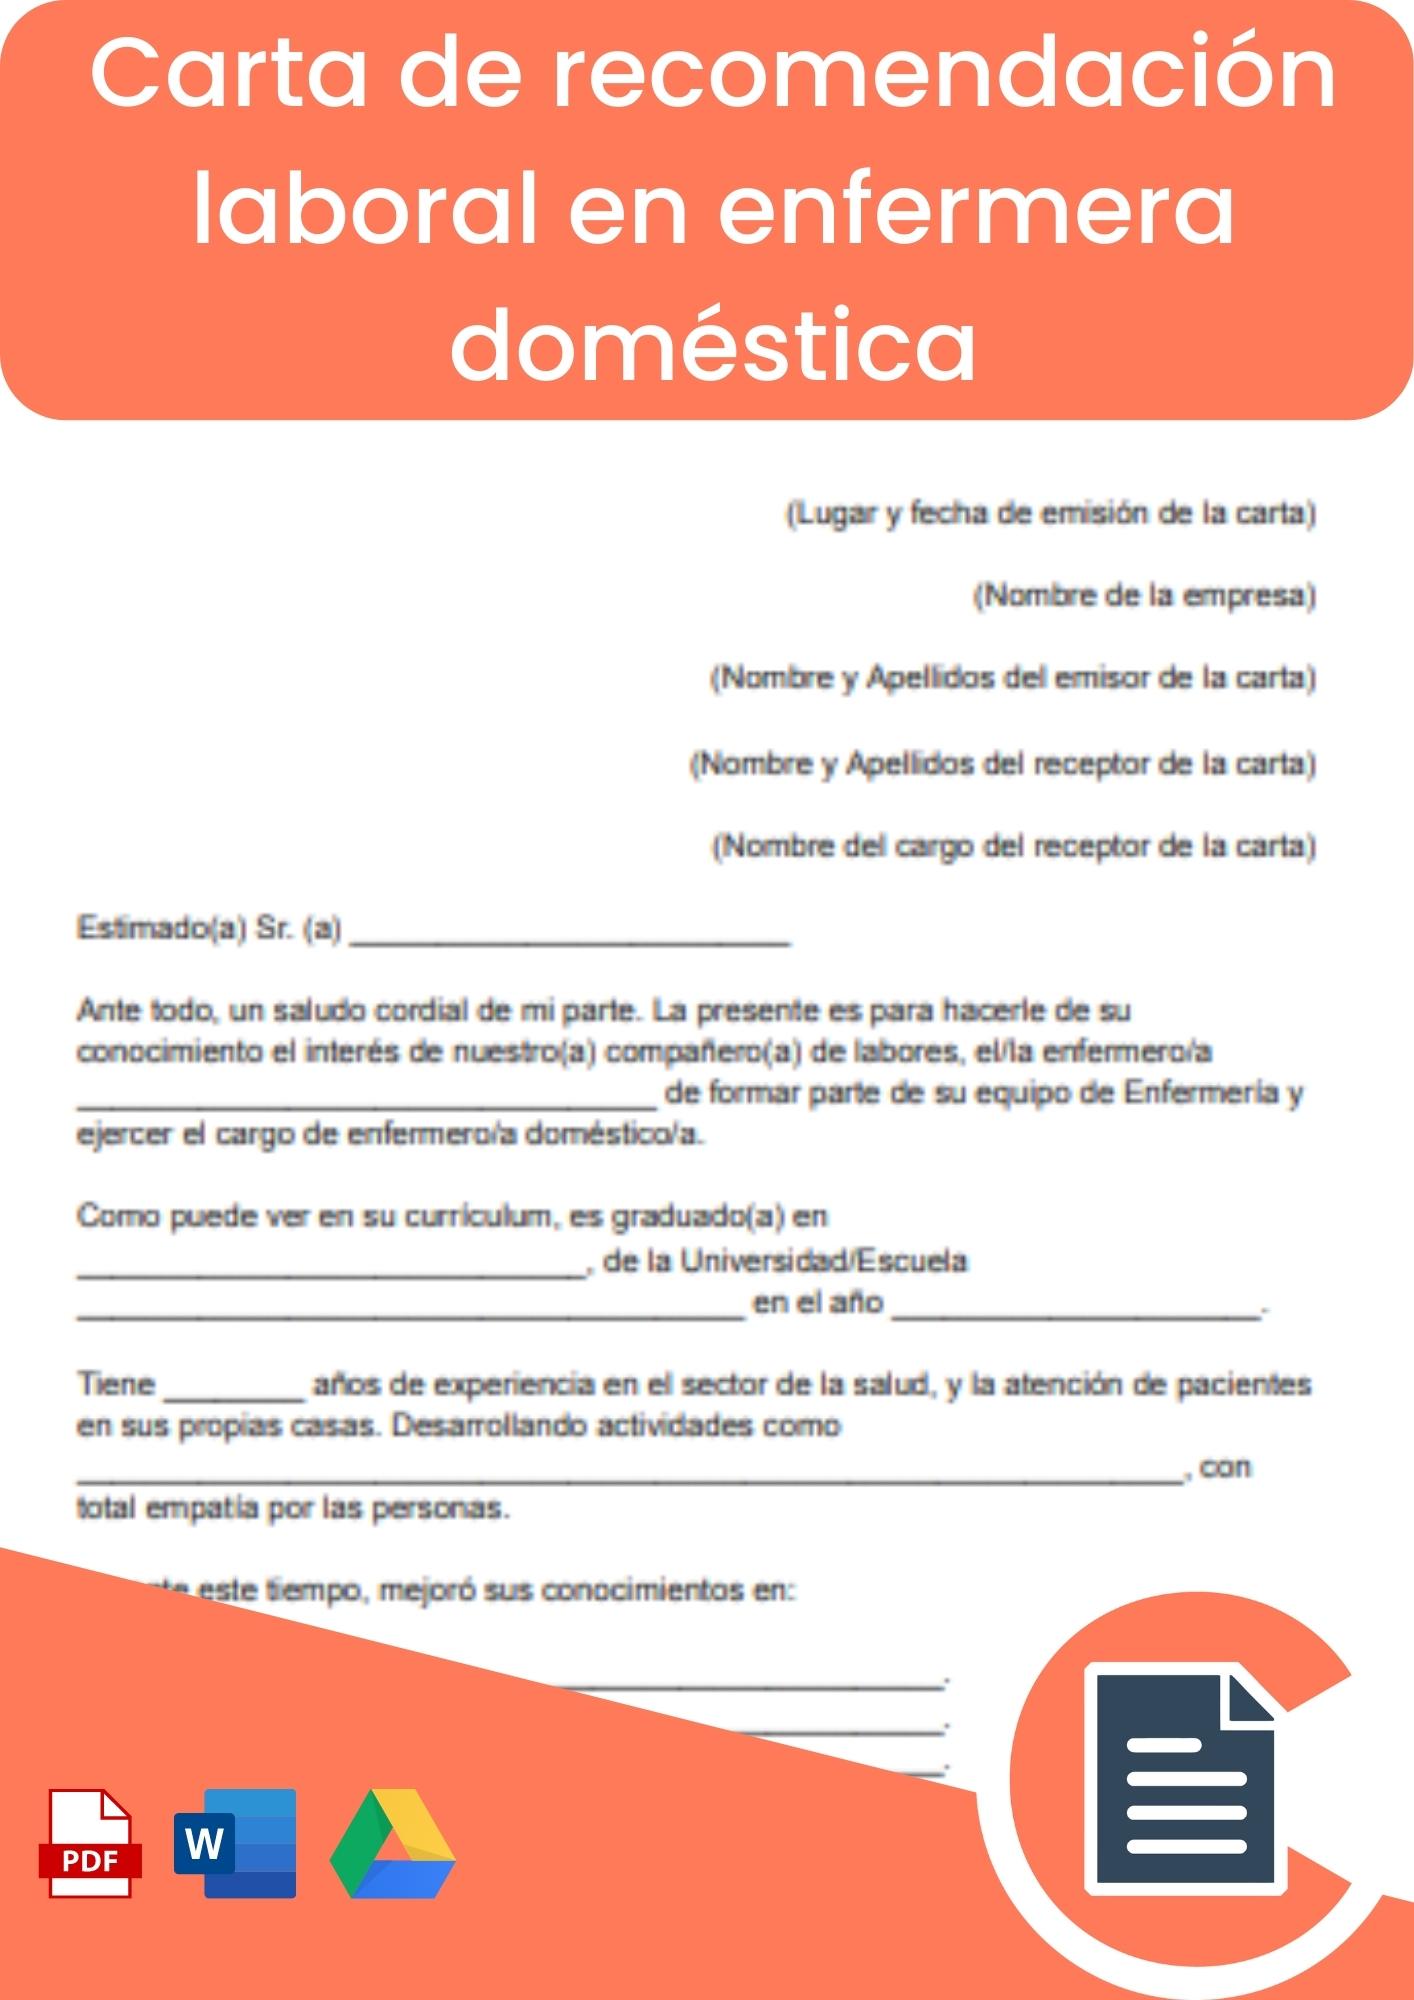 Carta de recomendación laboral en enfermeria domestica